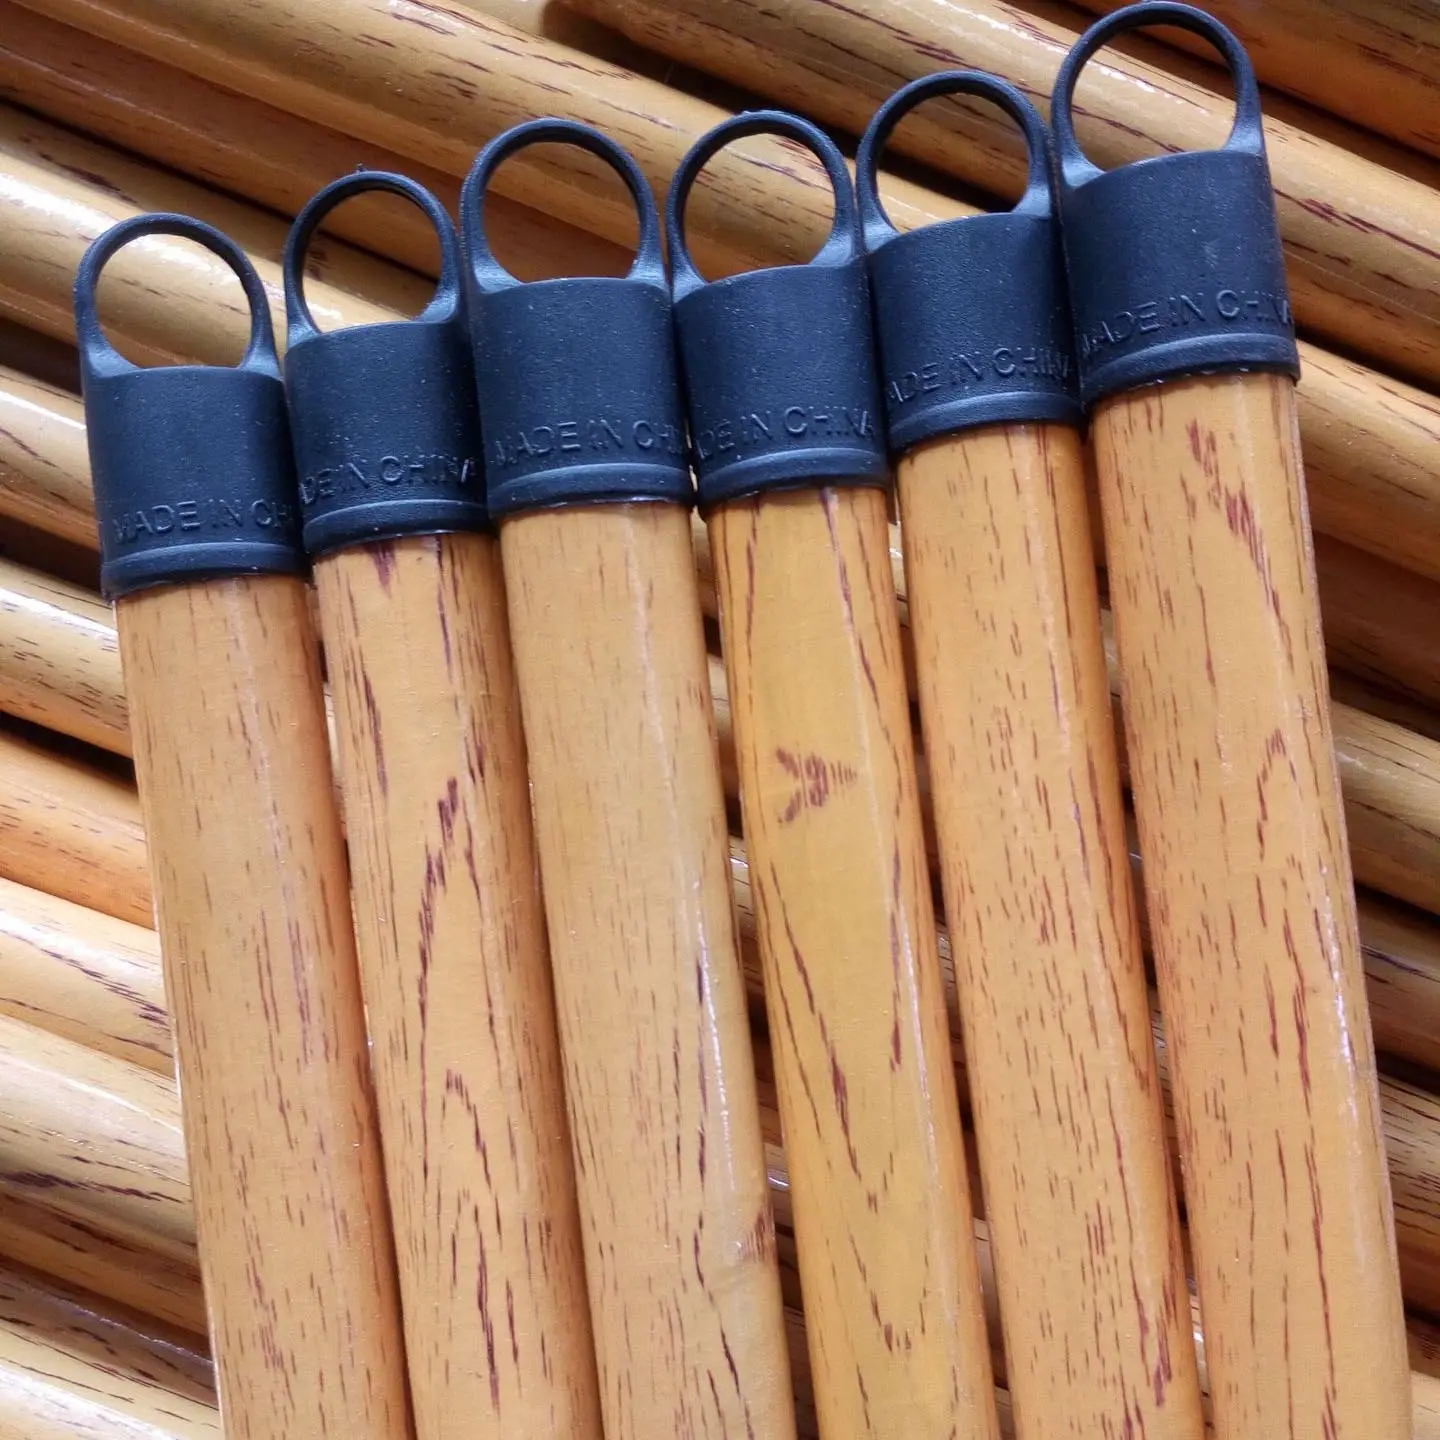 Venta al por mayor de palo de escoba de grano de madera recubierto de PVC duradero palos de fregona de madera chinos